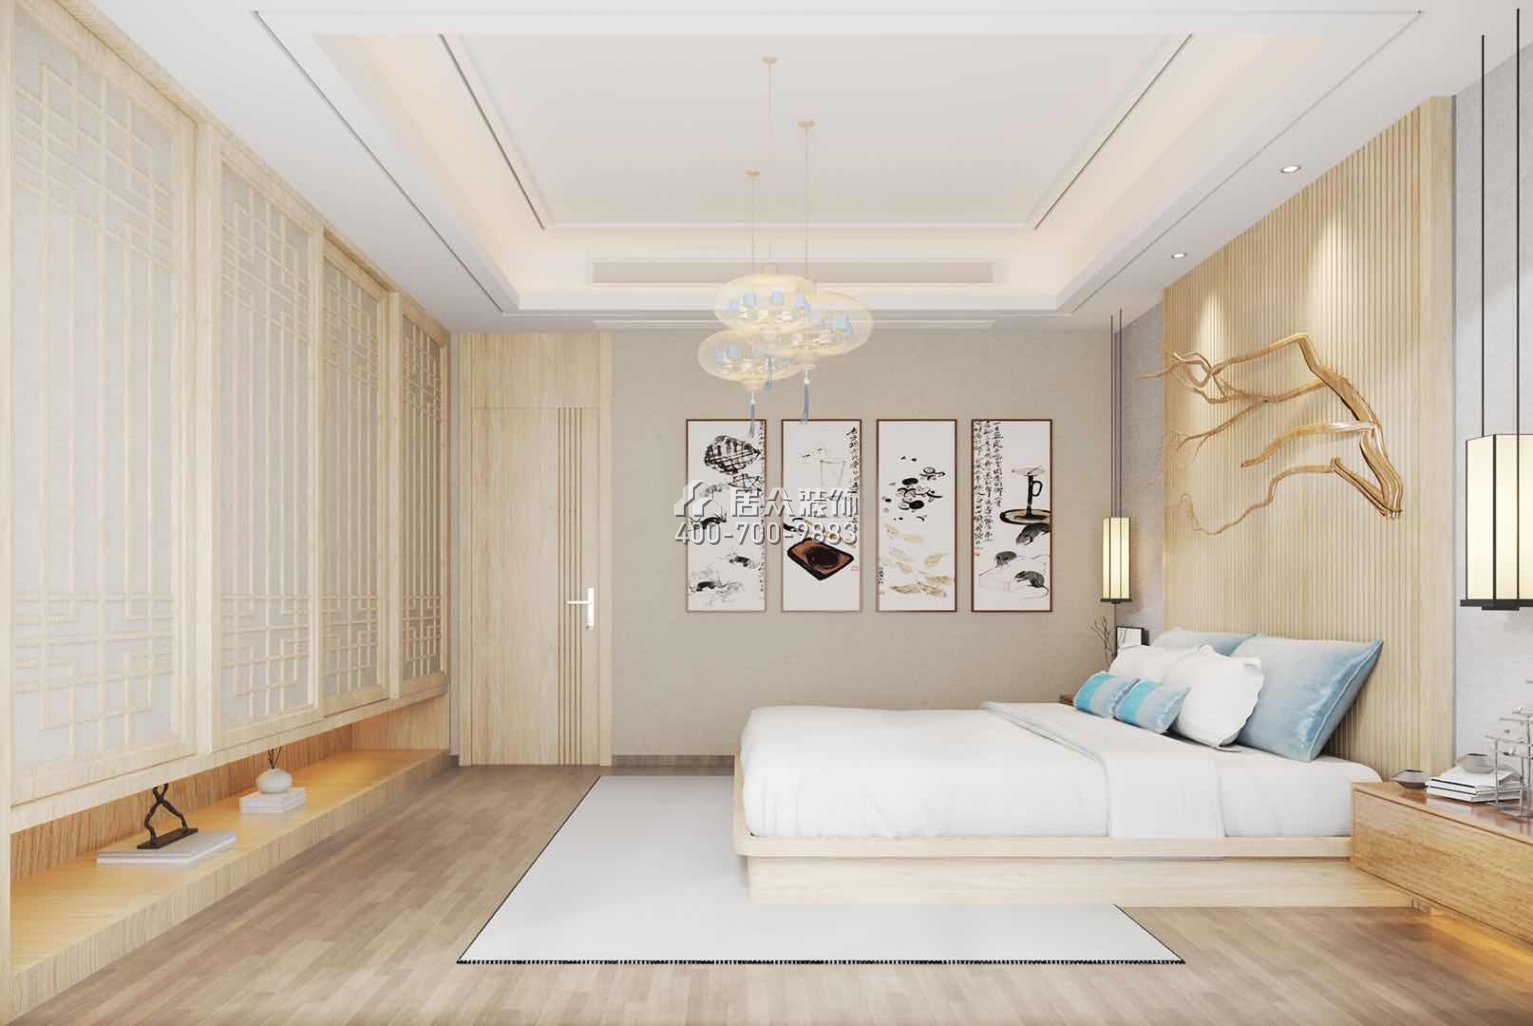 九洲保利天河620平方米中式風格別墅戶型臥室裝修效果圖